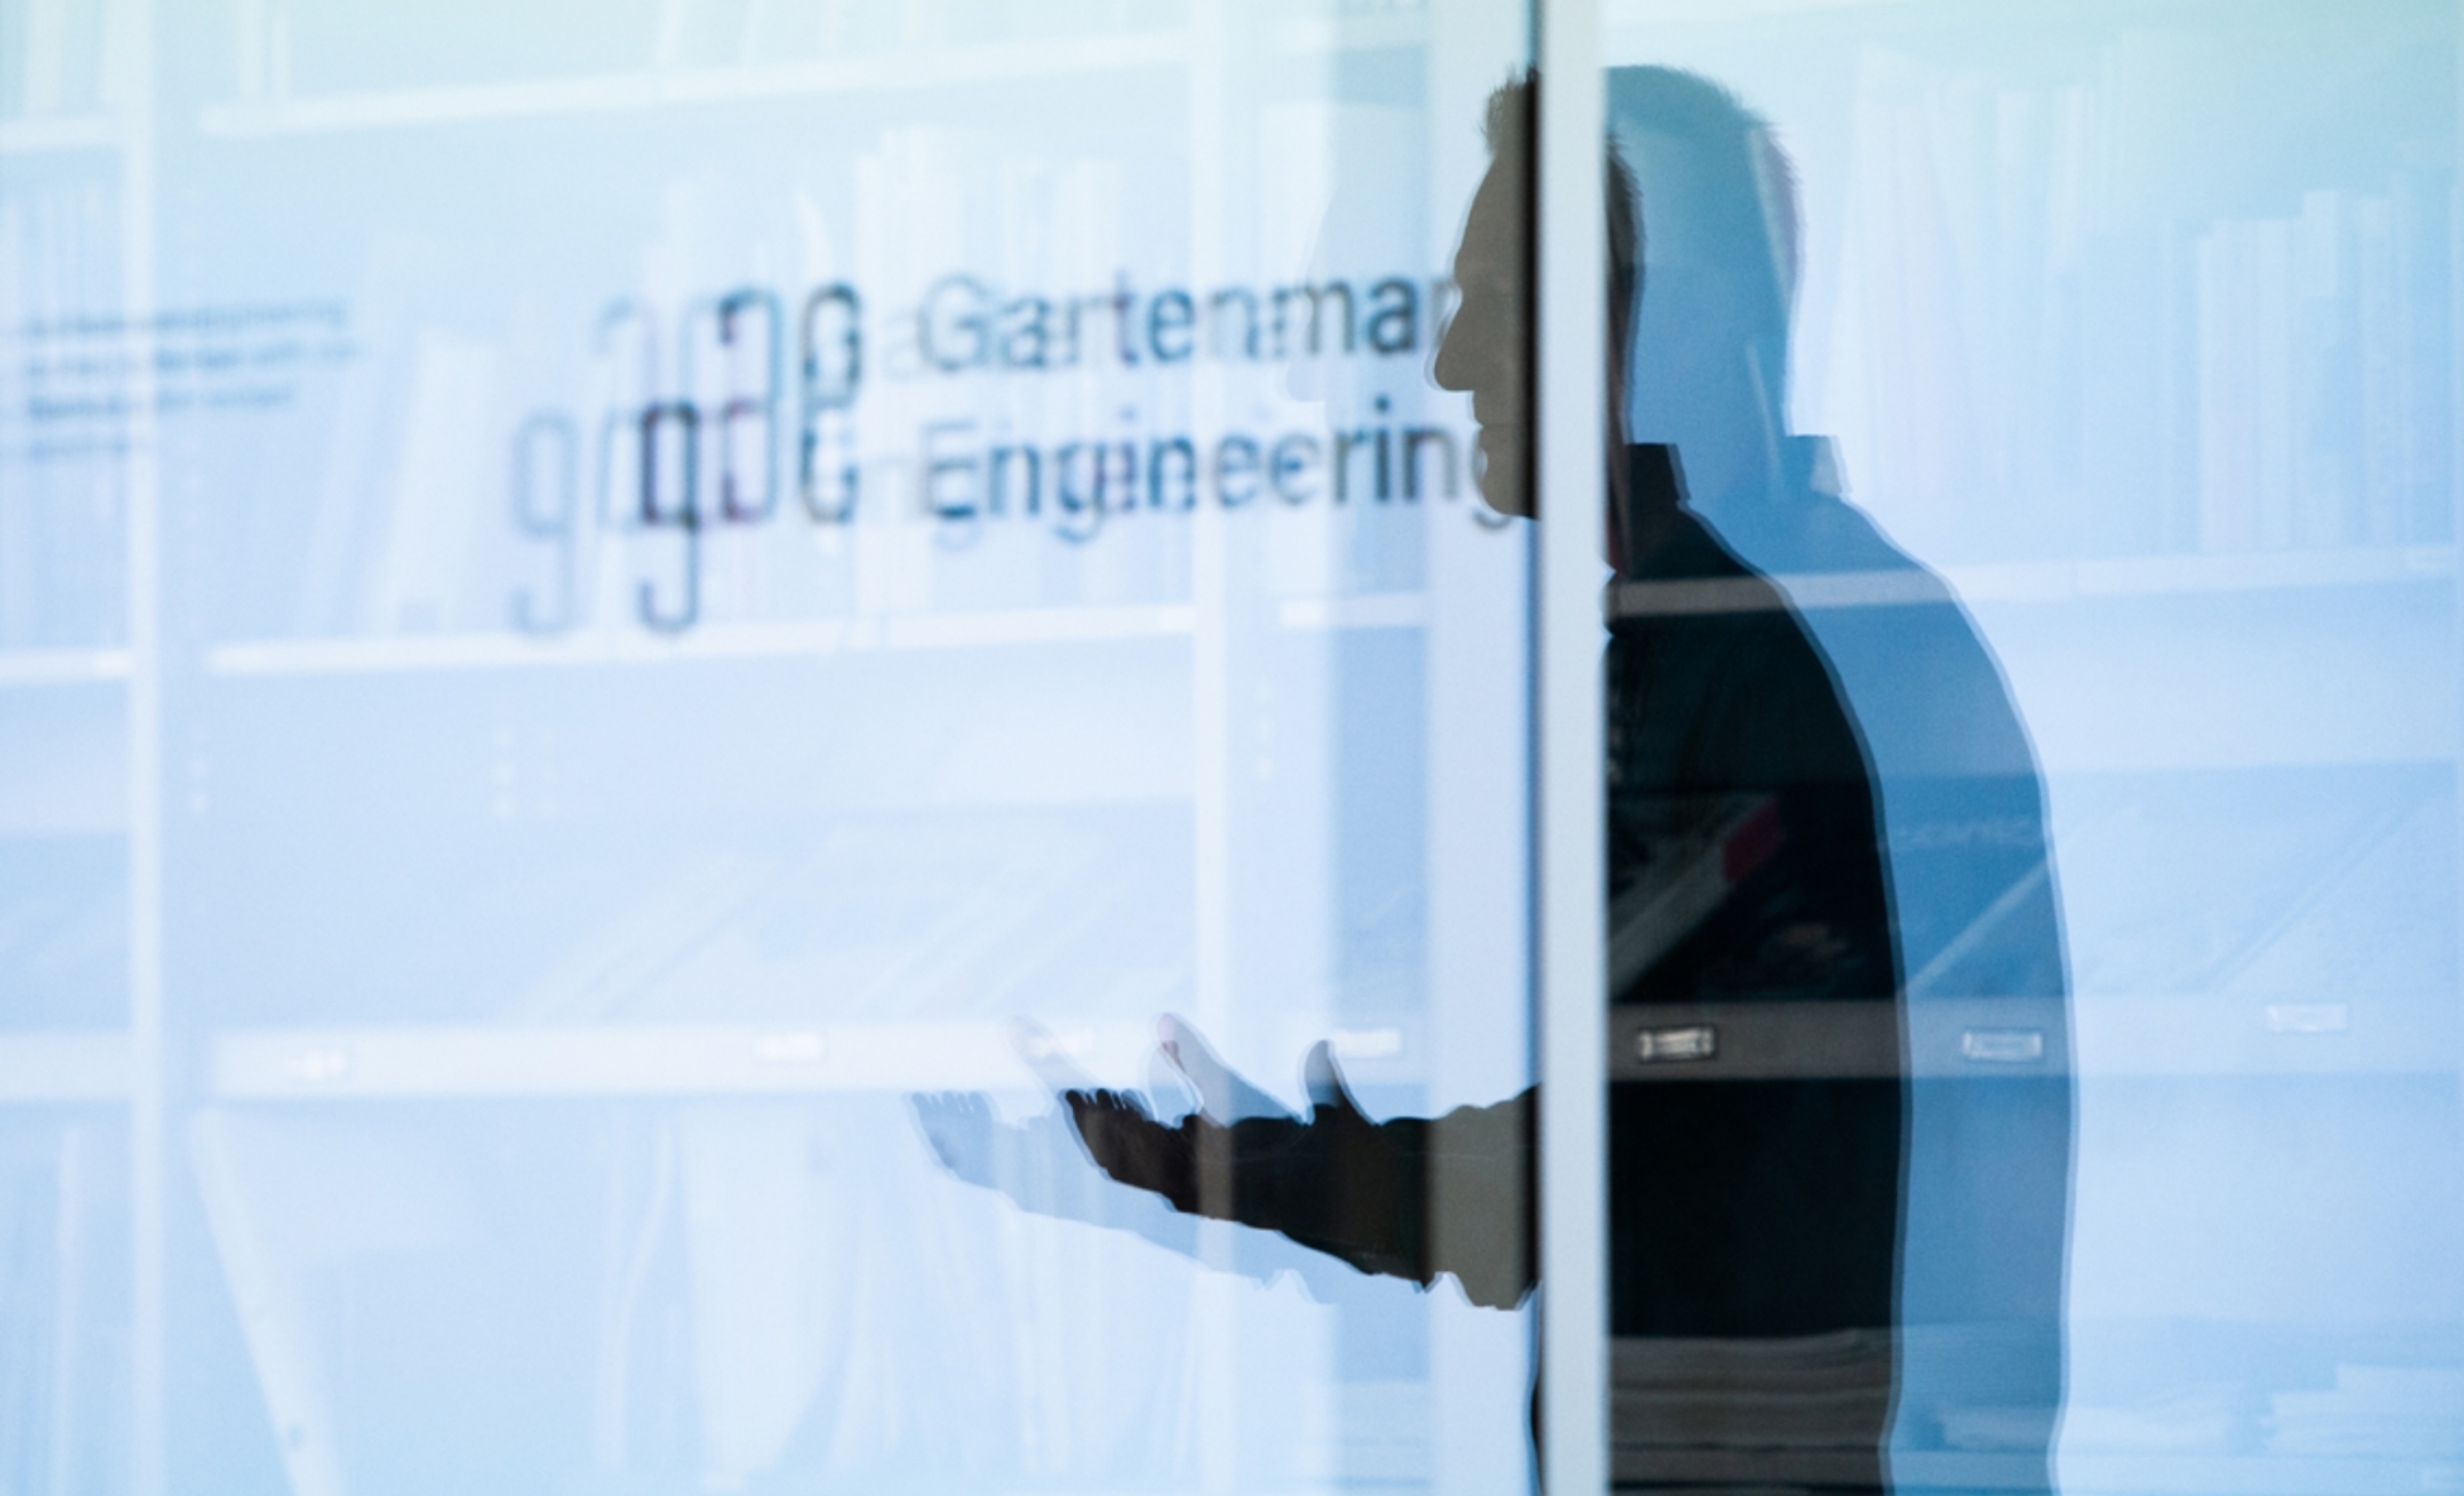 Garten­mann Engi­neer­ing